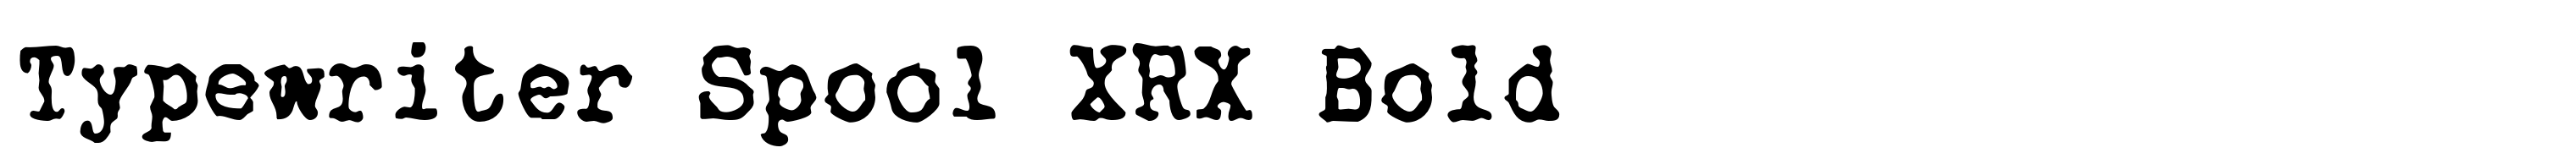 Typewriter Spool XRX Bold